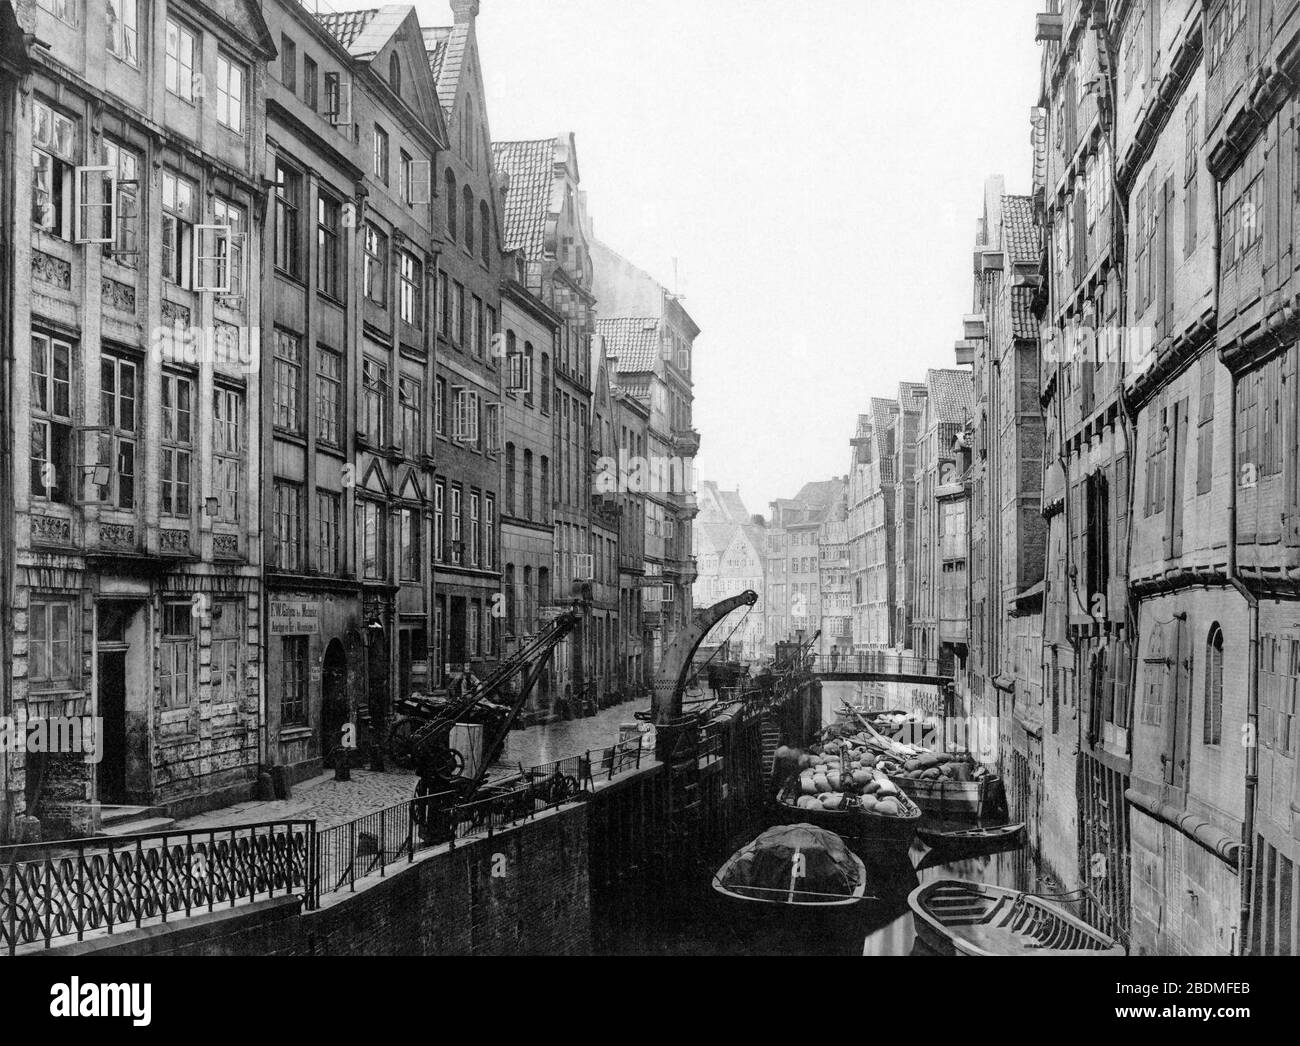 Hamburg.1883.Holländische Reihe.Vdz-16-300dpi. Stock Photo